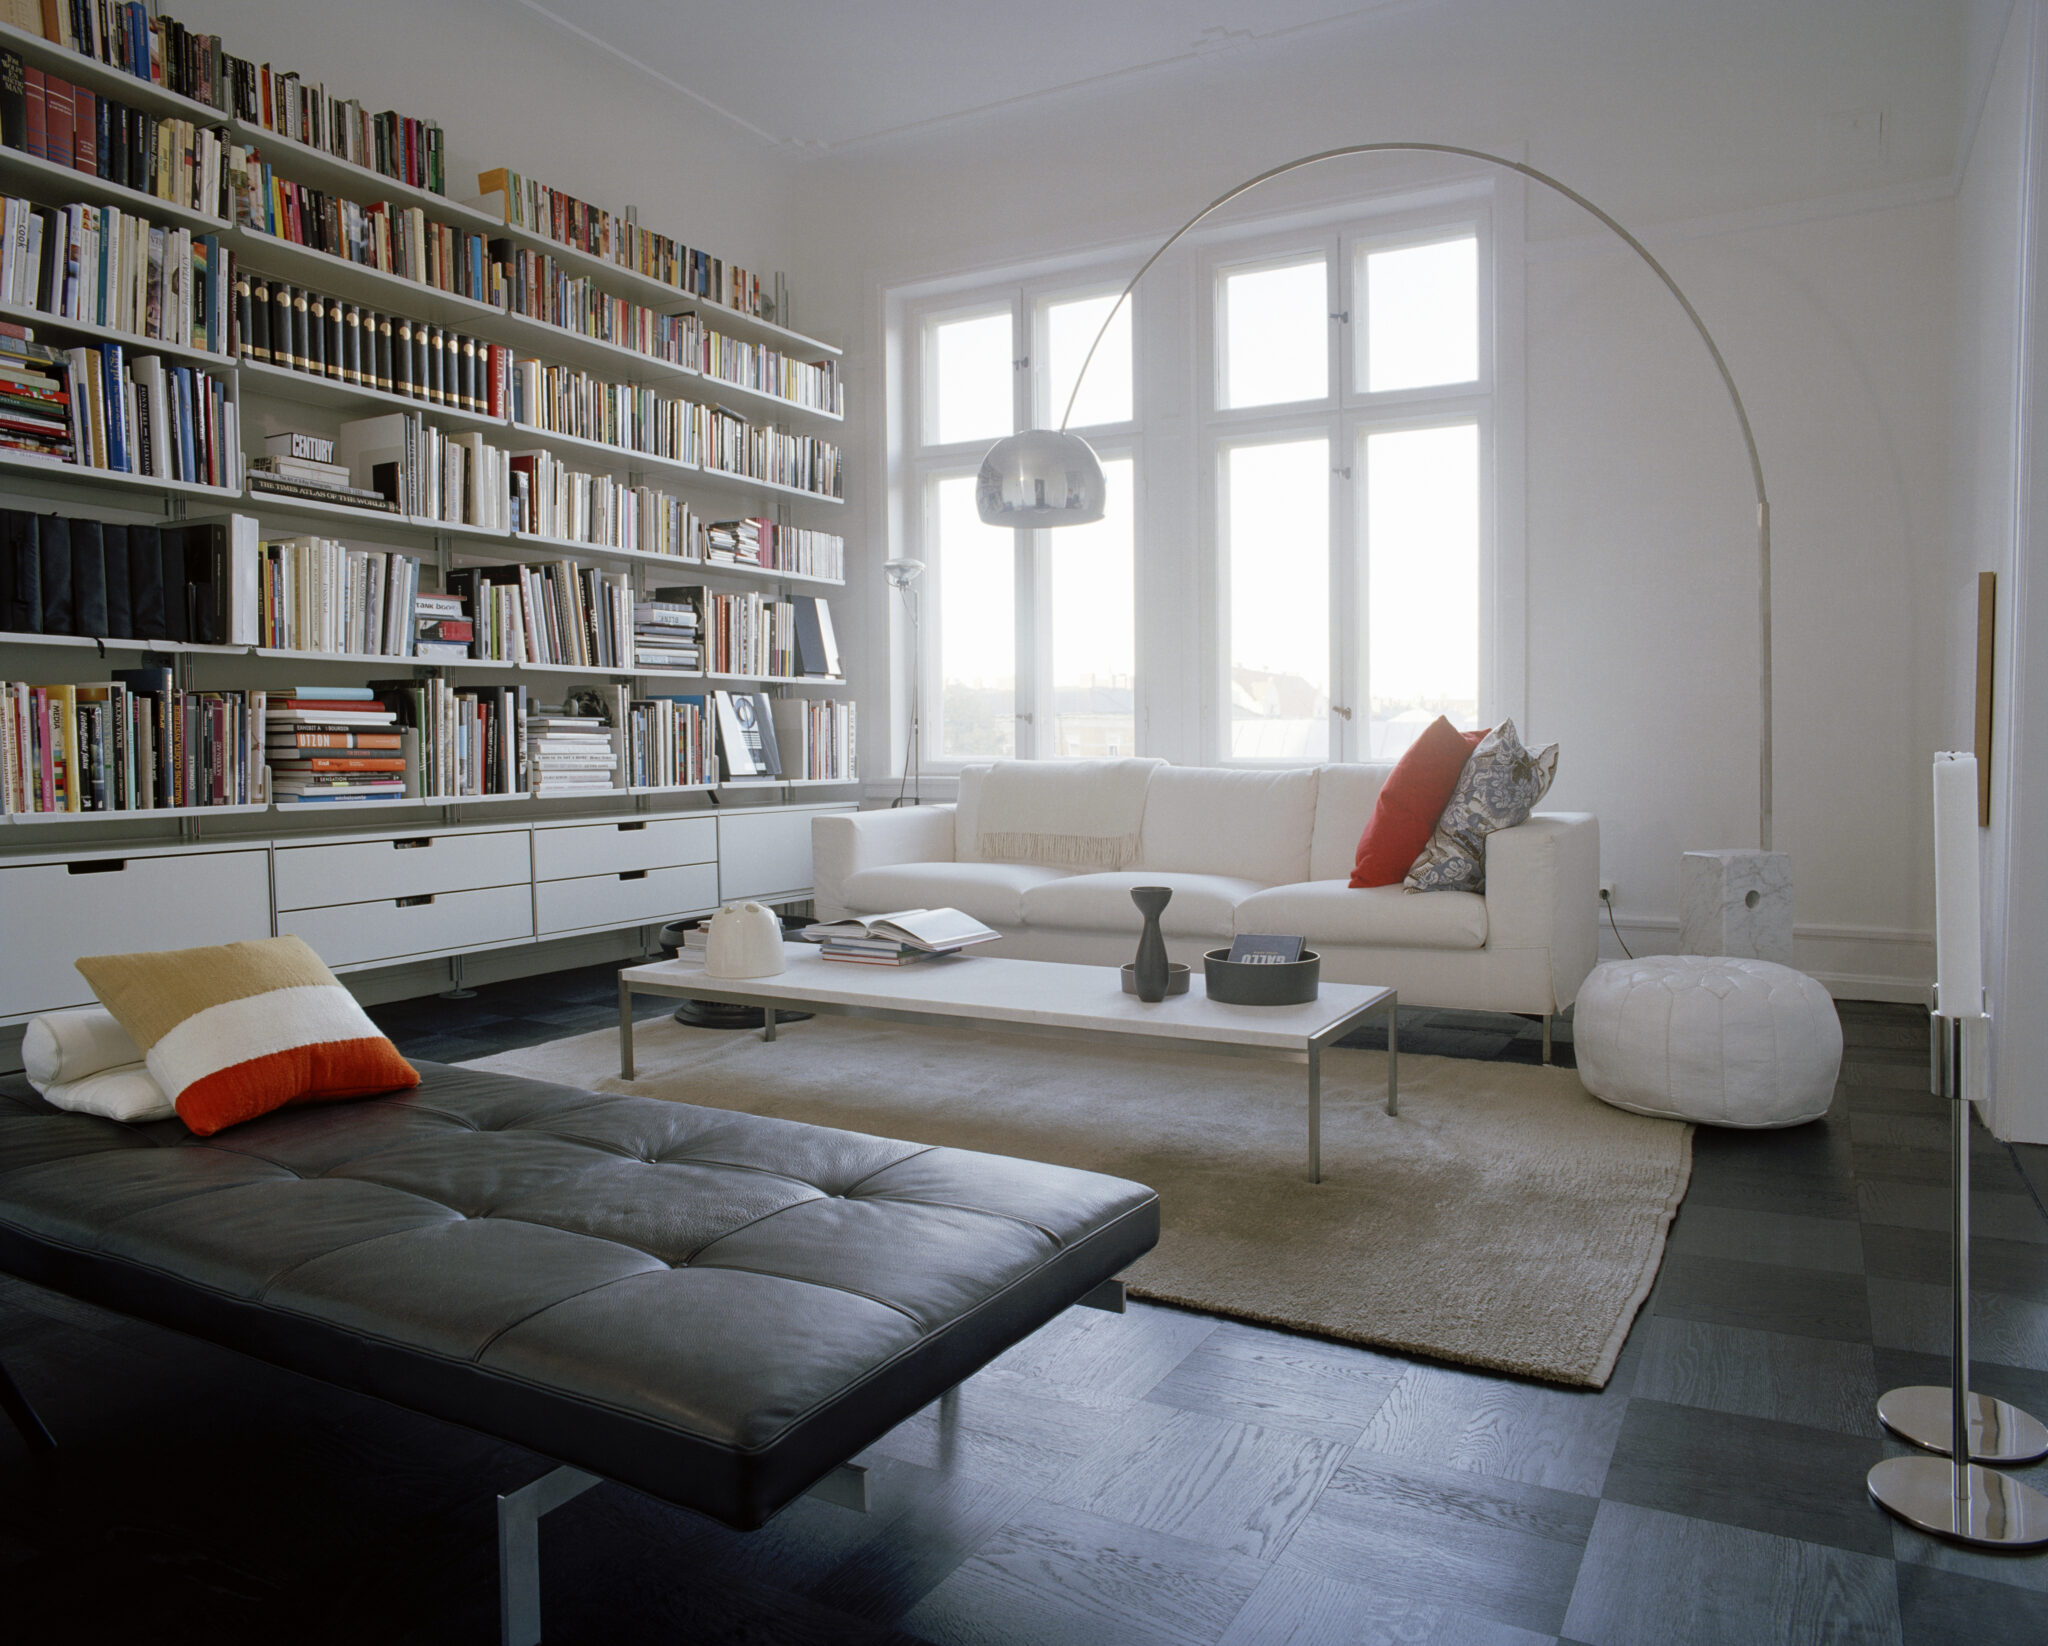 Top 10 Tips For Creating A Scandinavian Interior